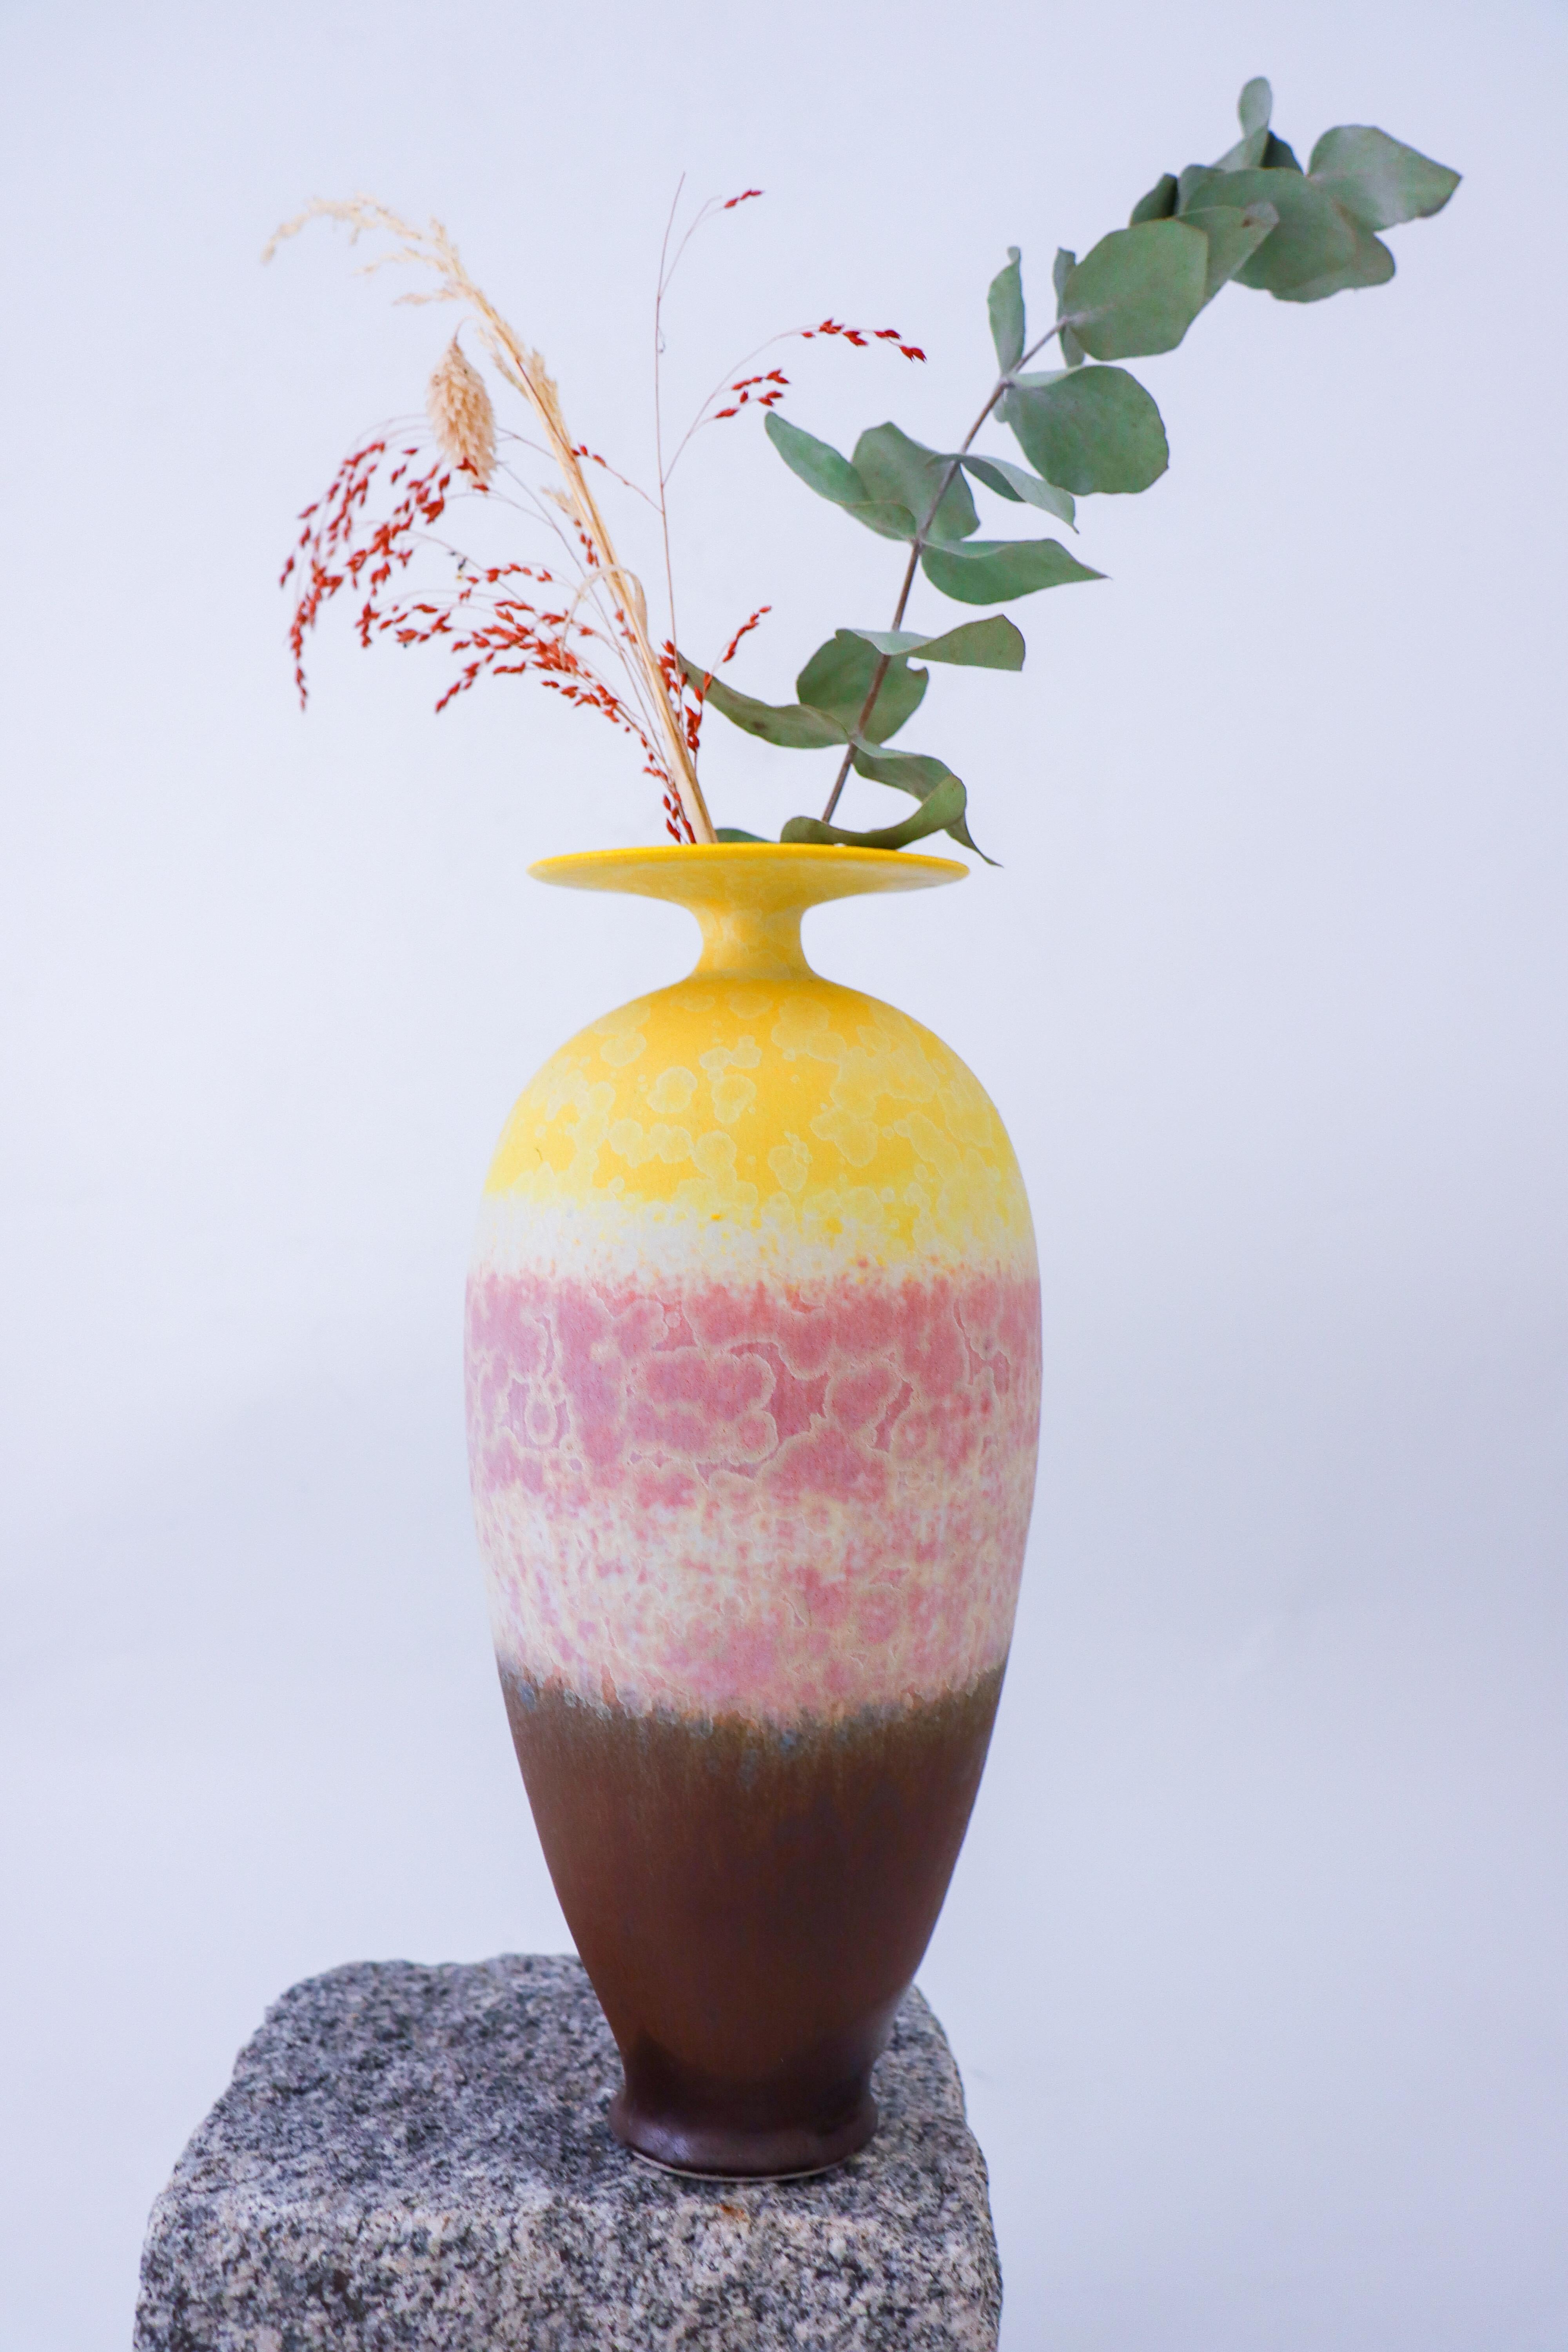 Eine schöne Vase mit gelber, rosa und brauner kristalliner Glasur, entworfen von Isak Isaksson in Schweden. Die Vase ist 28 cm hoch, hat einen Durchmesser von 14 cm und ist in ausgezeichnetem Zustand. Dies ist eine einzigartige Vase handgedreht von